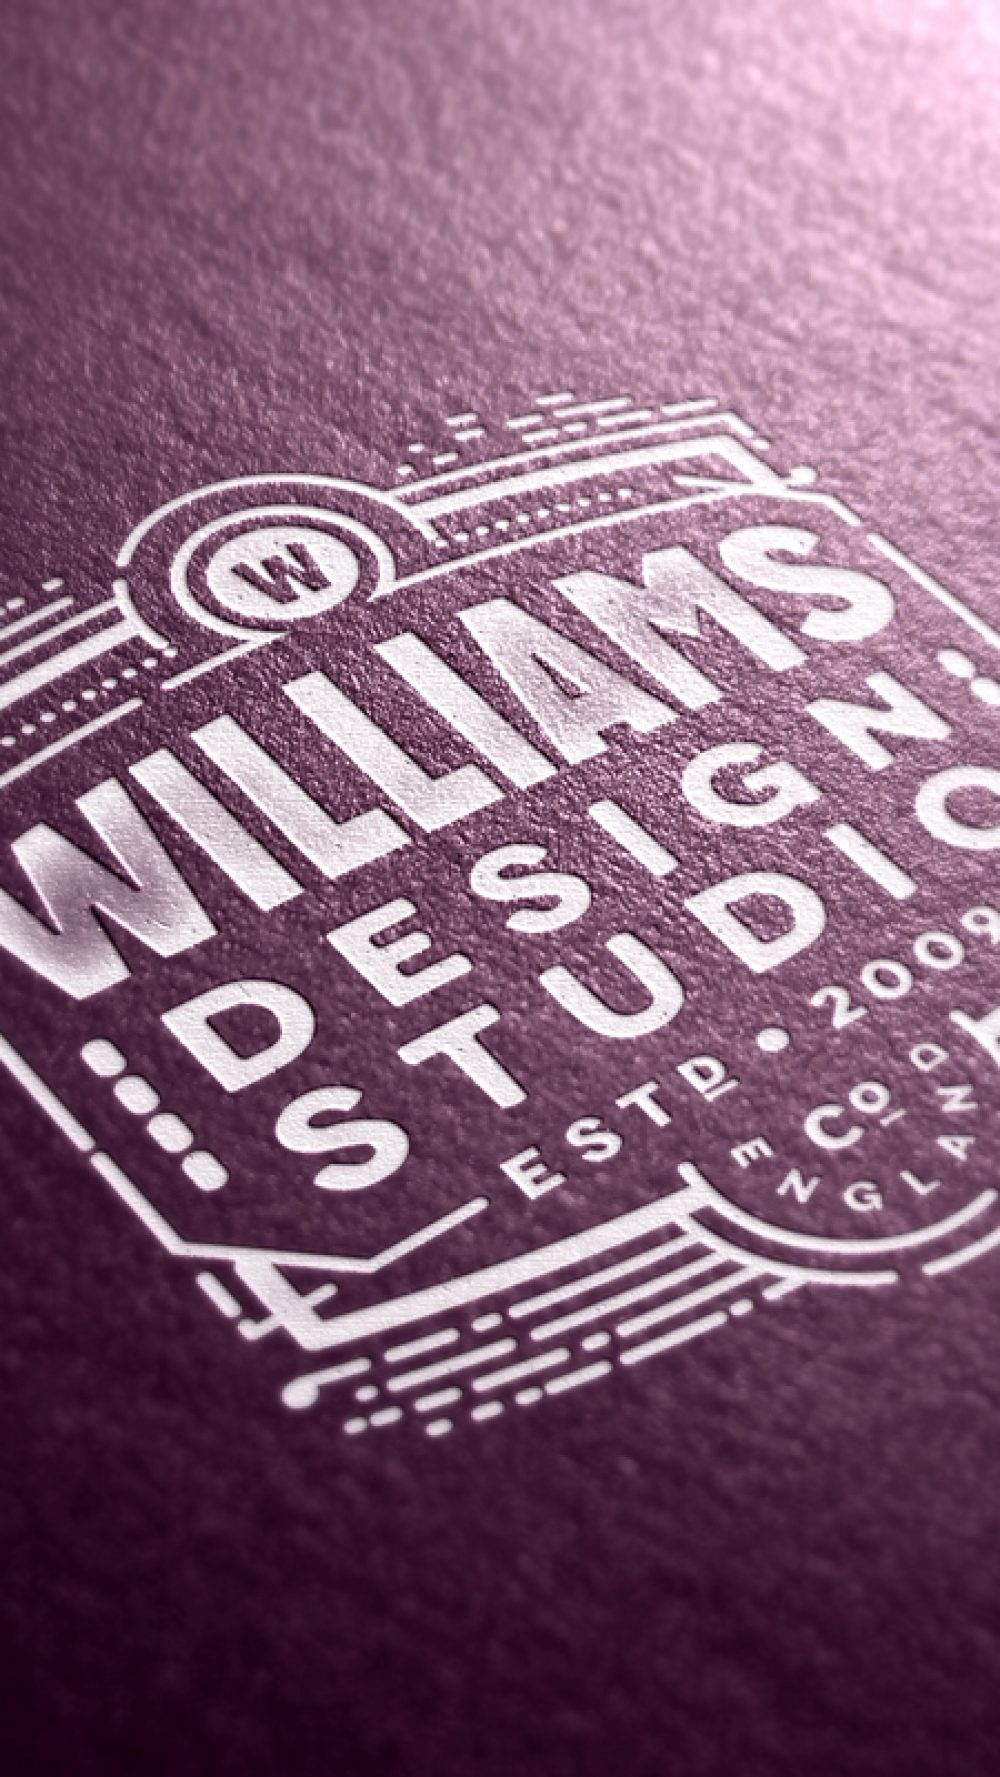 Williams Studio